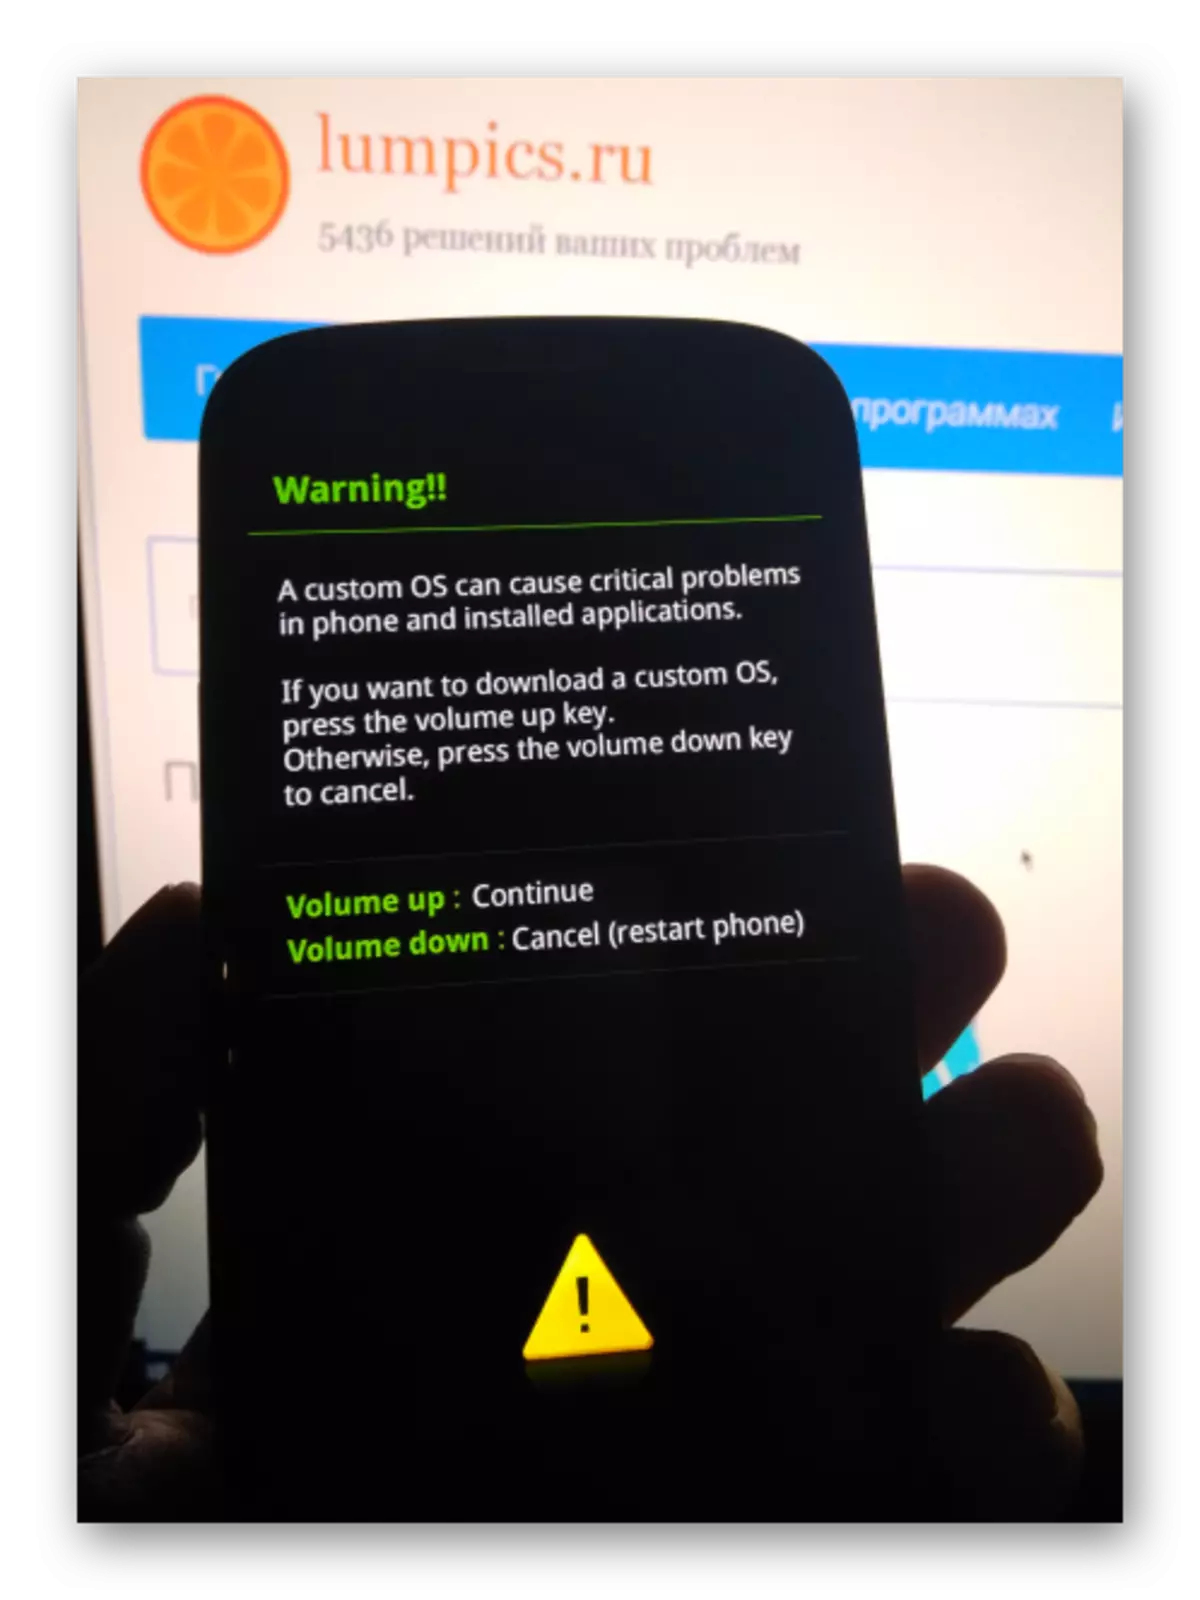 Odin-mode ကိုမသုံးမီ Samsung GT-I9300 Galaxy S III သတိပေးချက်